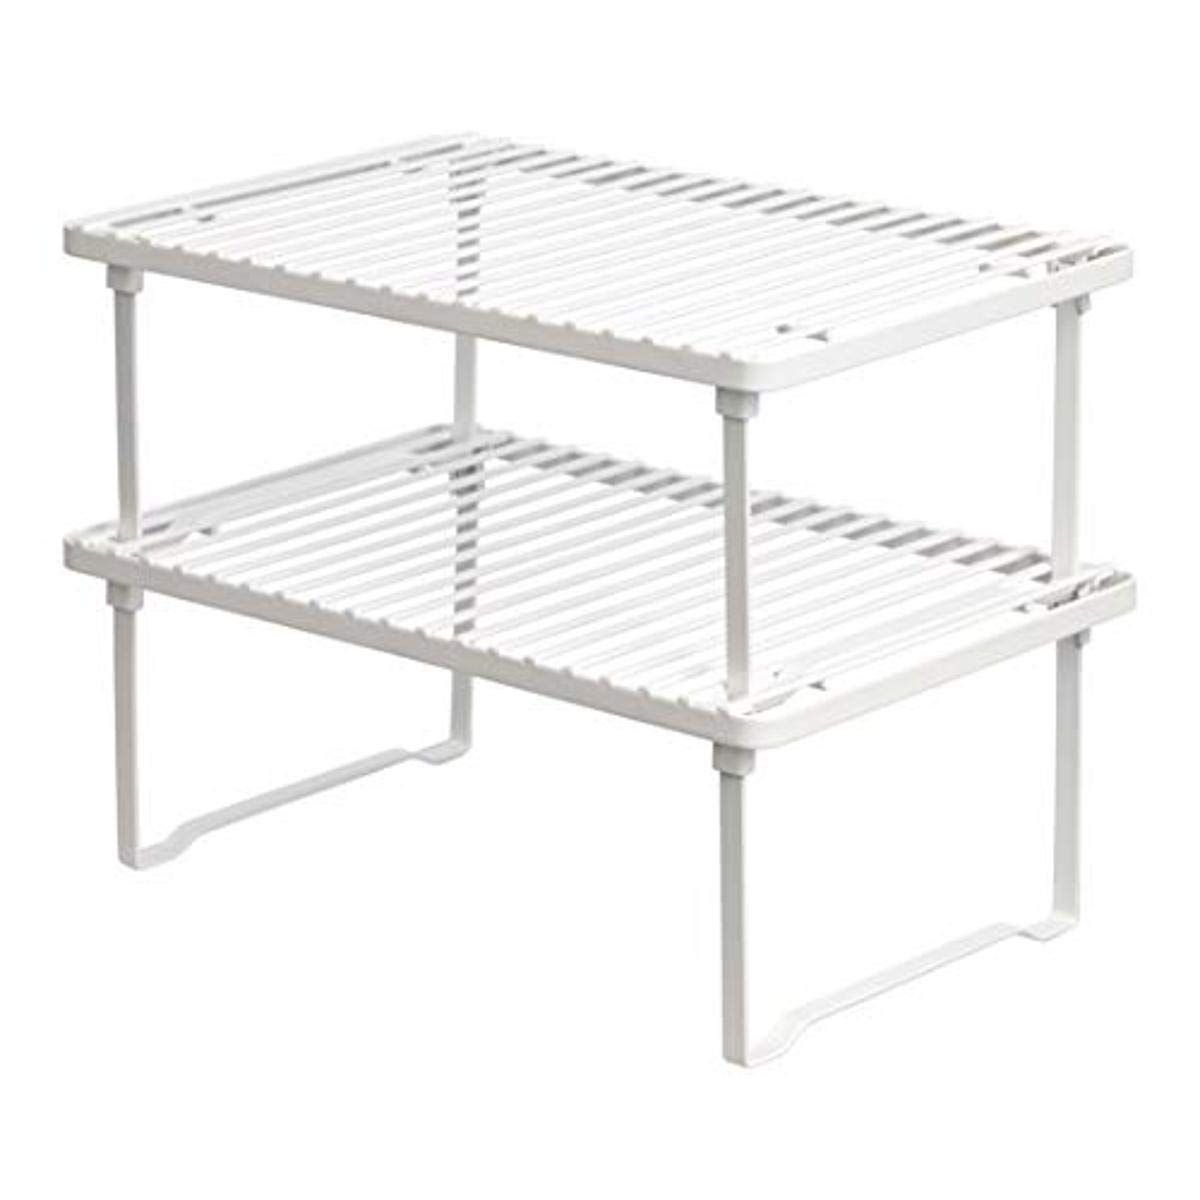 Amazon Basics Stackable Metal Kitchen Storage Shelves, Set of 2 - White | Amazon (US)